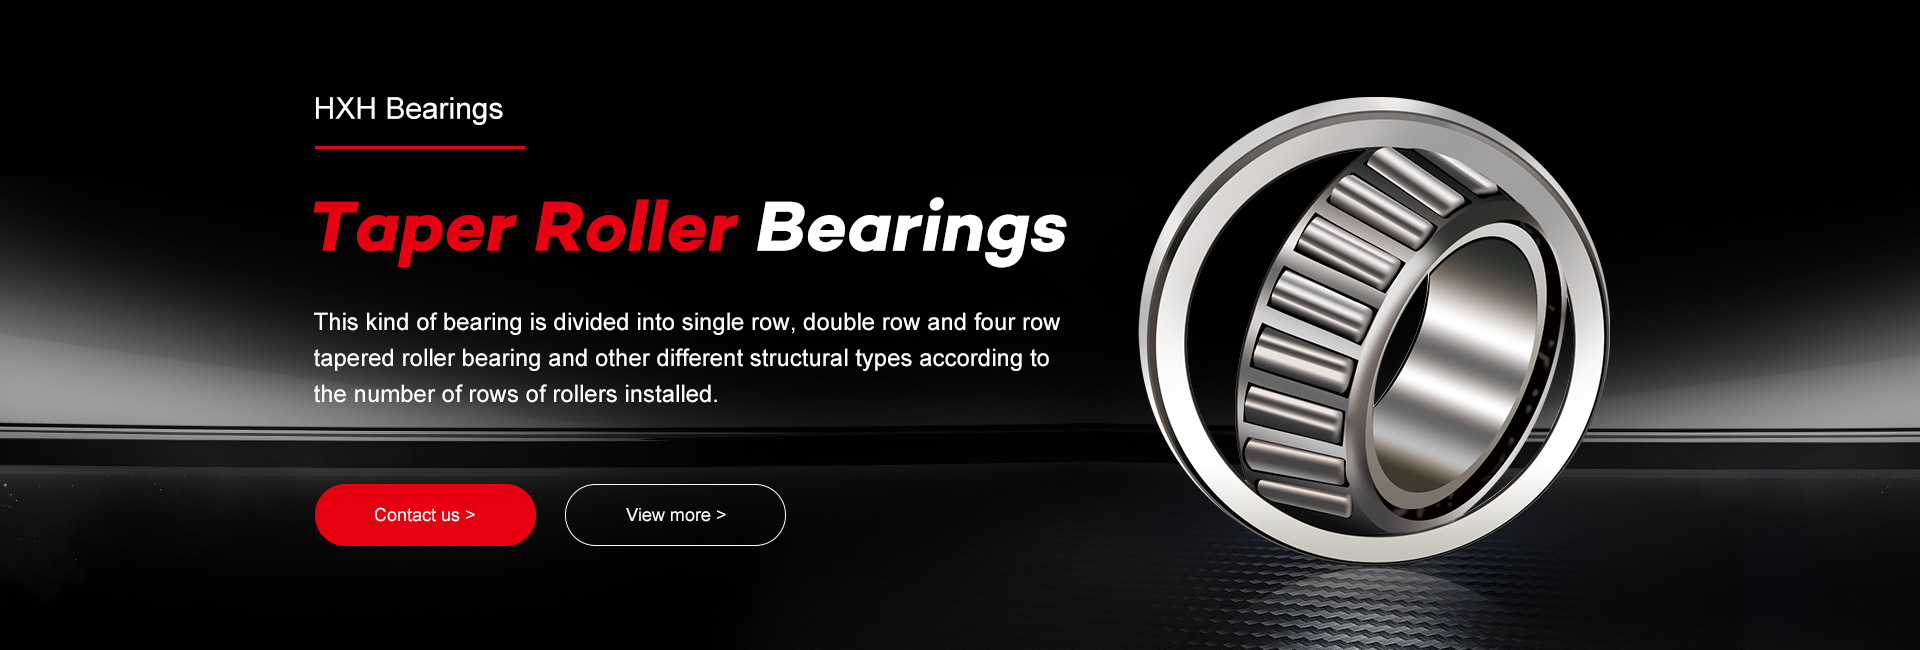 HXHV taper roller bearings